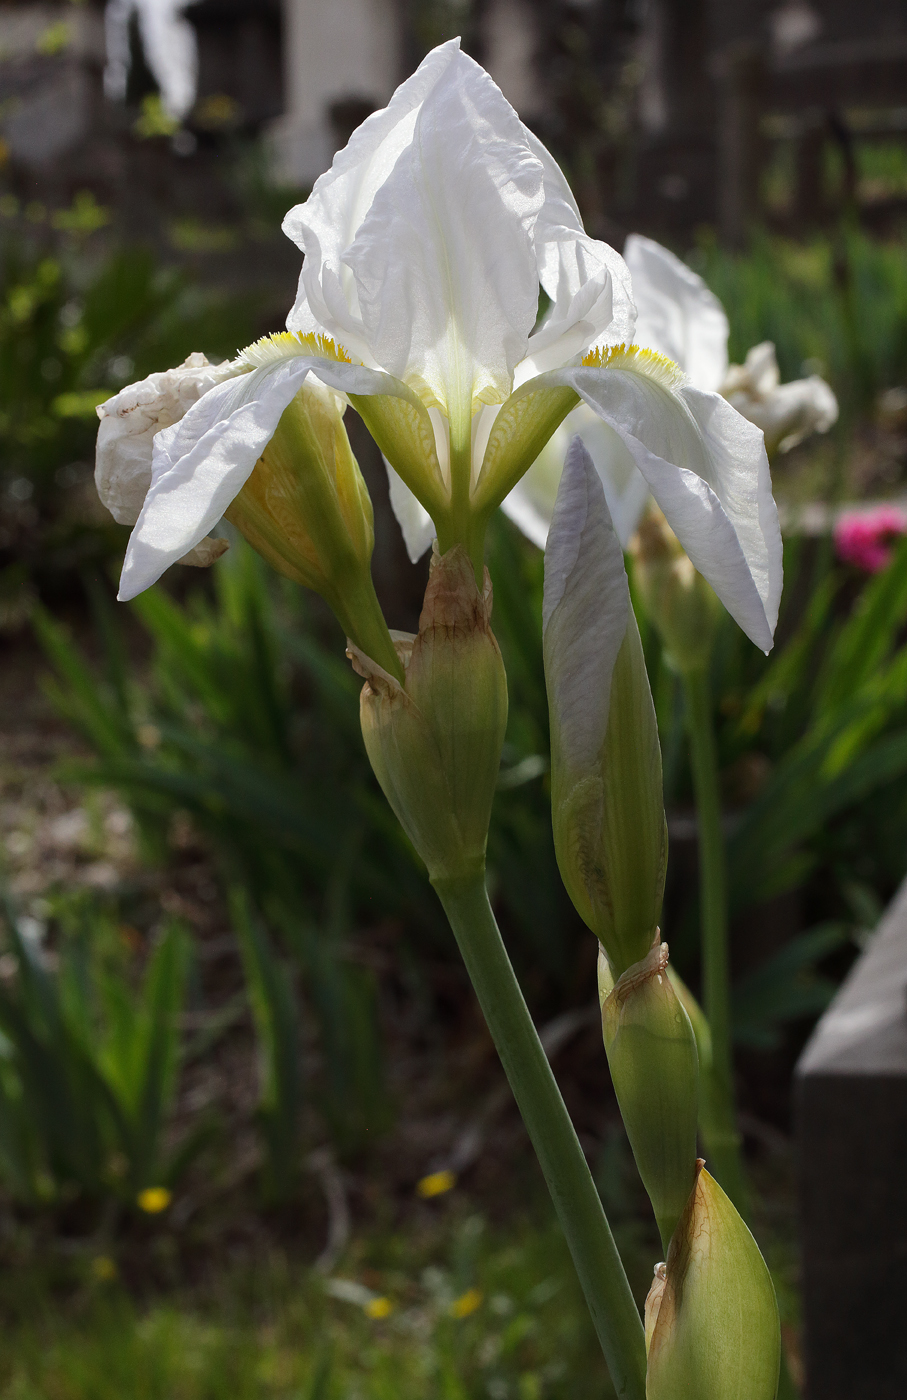 fiore di Iris florentina L. appena aperto: le lacinie inferiori appaiono ancora parzialmente appuntite